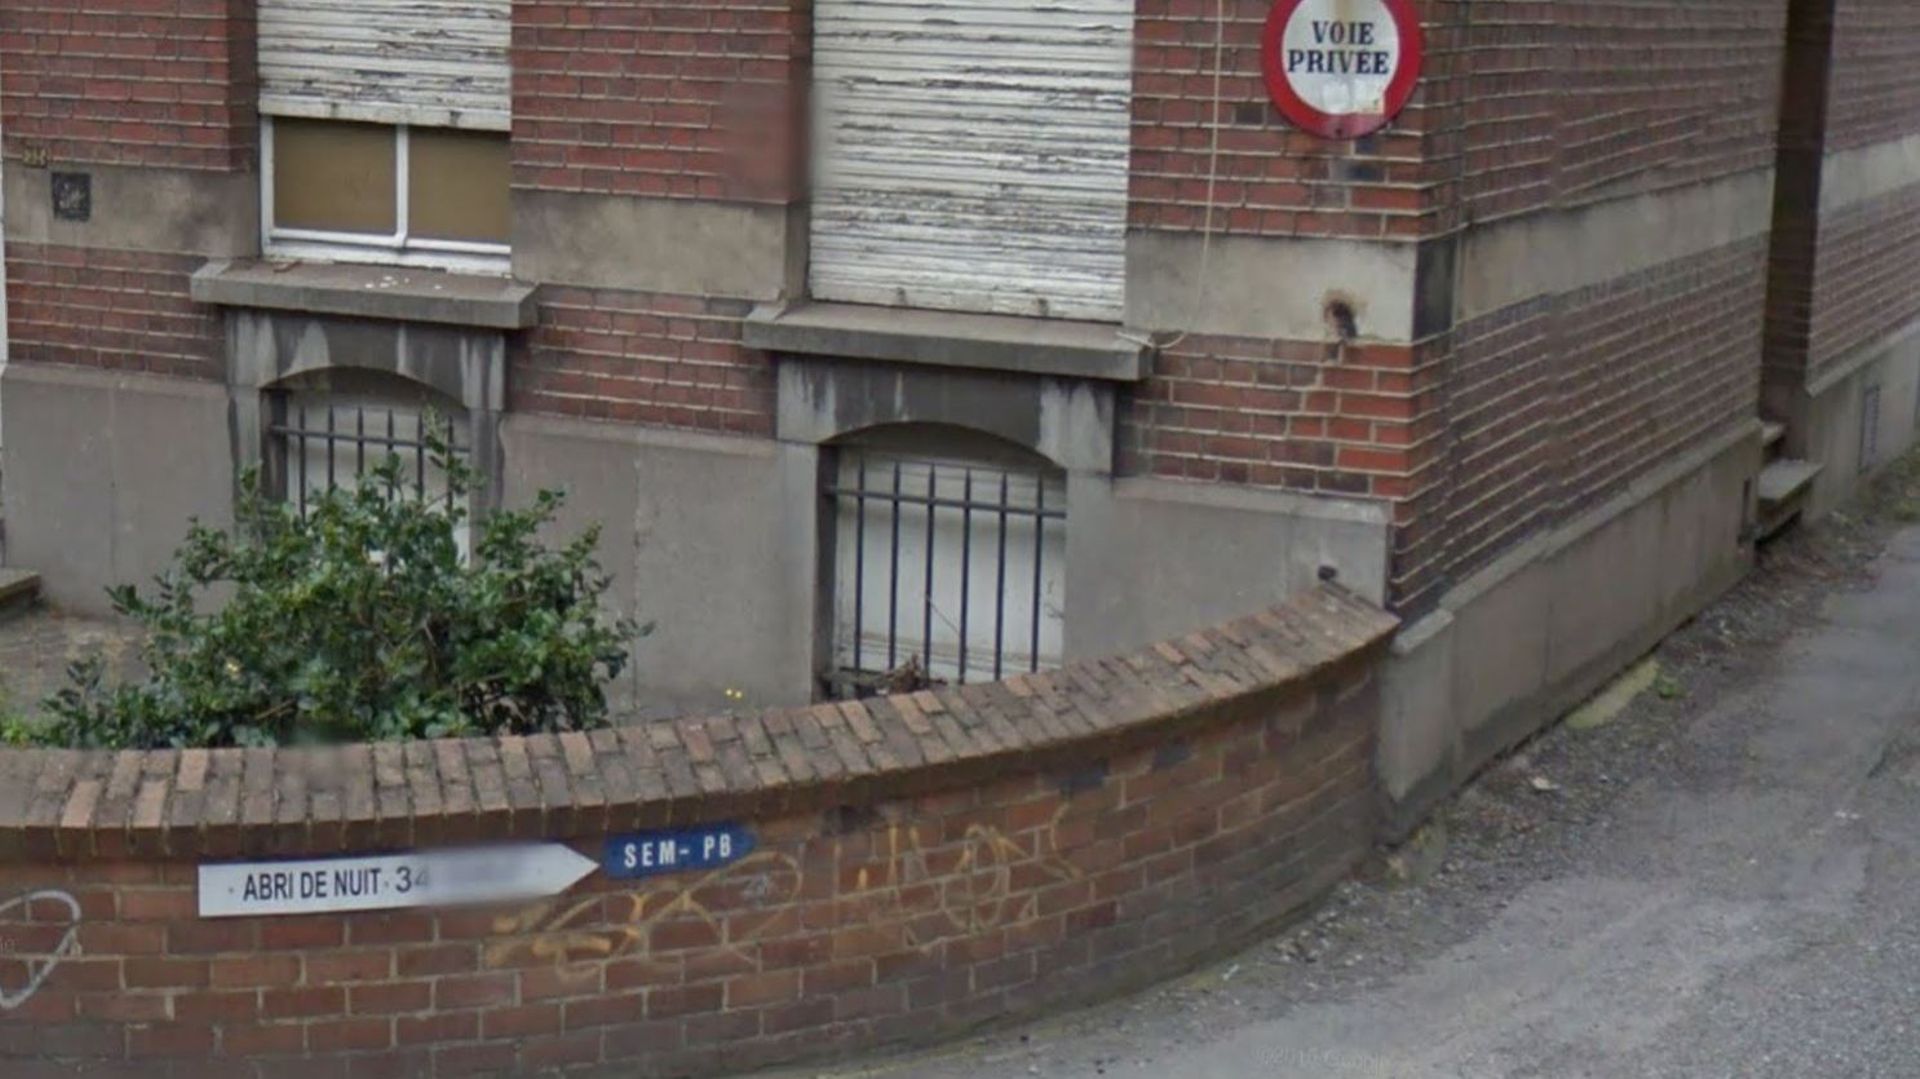 Il n'y a que trois lits pour les femmes à l'abri de nuit de la rue Dourlet à Charleroi